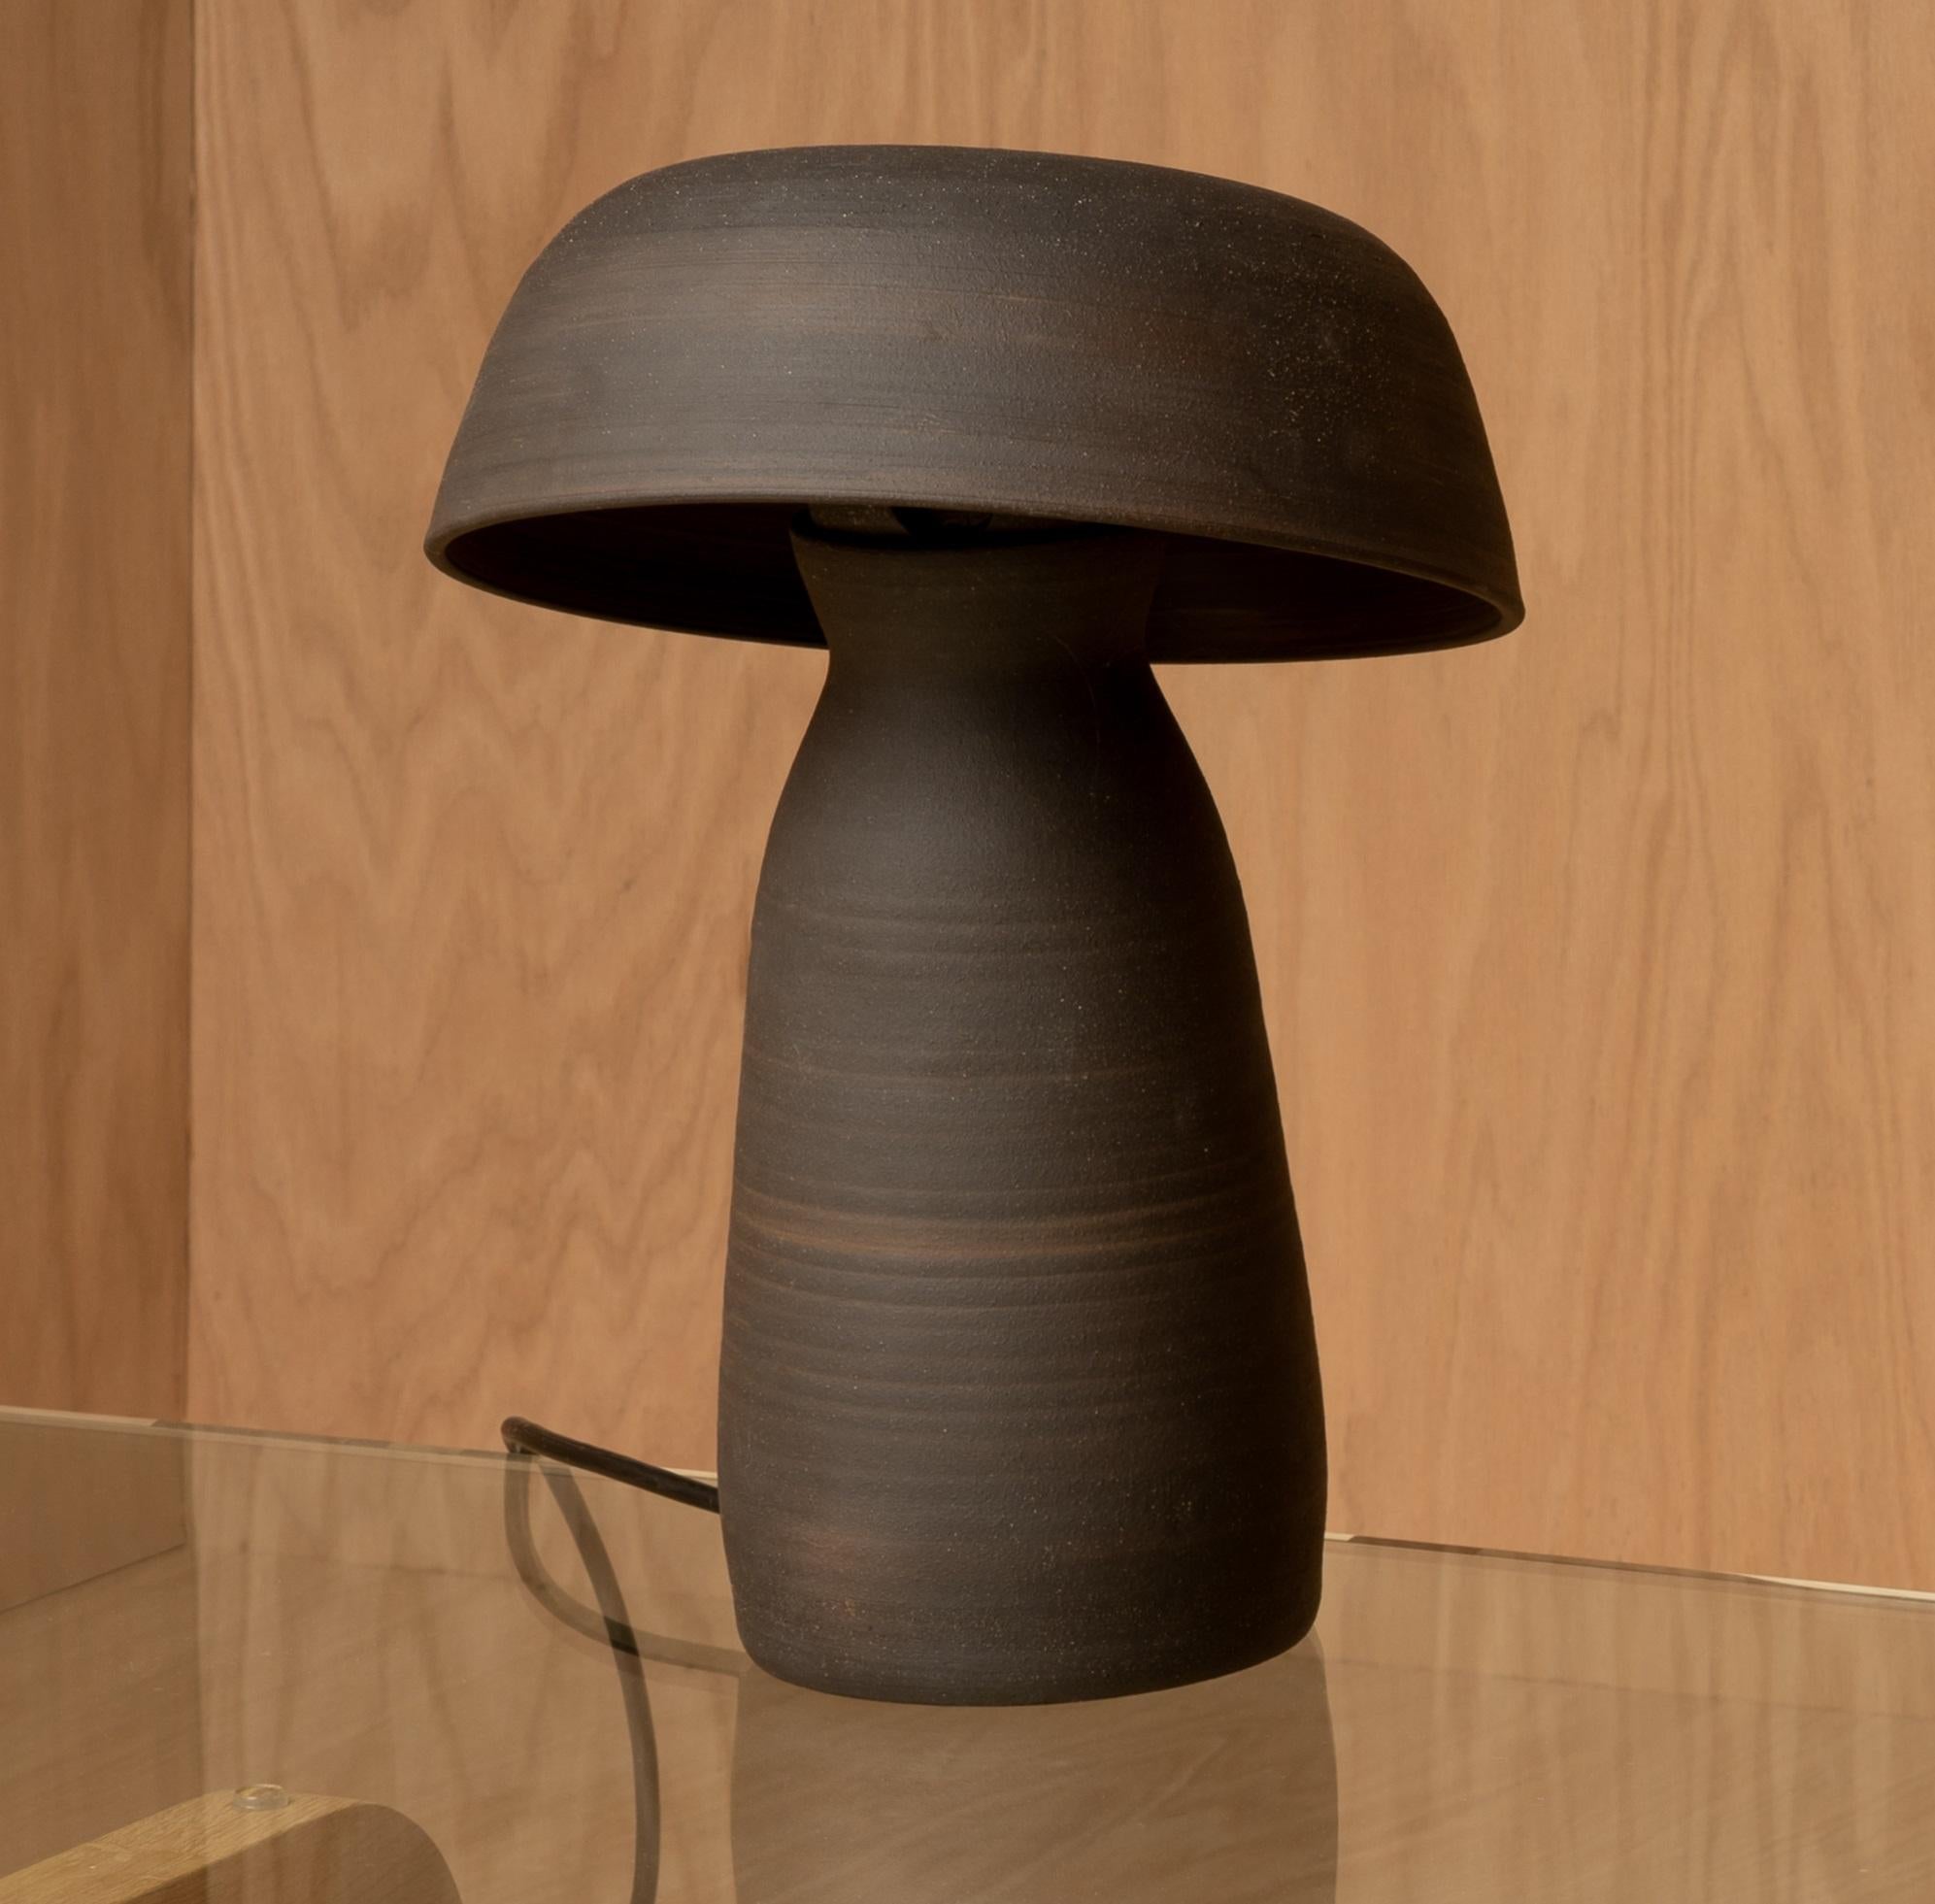 Lampe champignon Black Raw Small par Nick Pourfard
Dimensions : Ø 33 x H 38 cm.
Matériaux : céramique.
Différentes finitions disponibles. Veuillez nous contacter.

Toutes nos lampes peuvent être câblées en fonction de chaque pays. Si elle est vendue